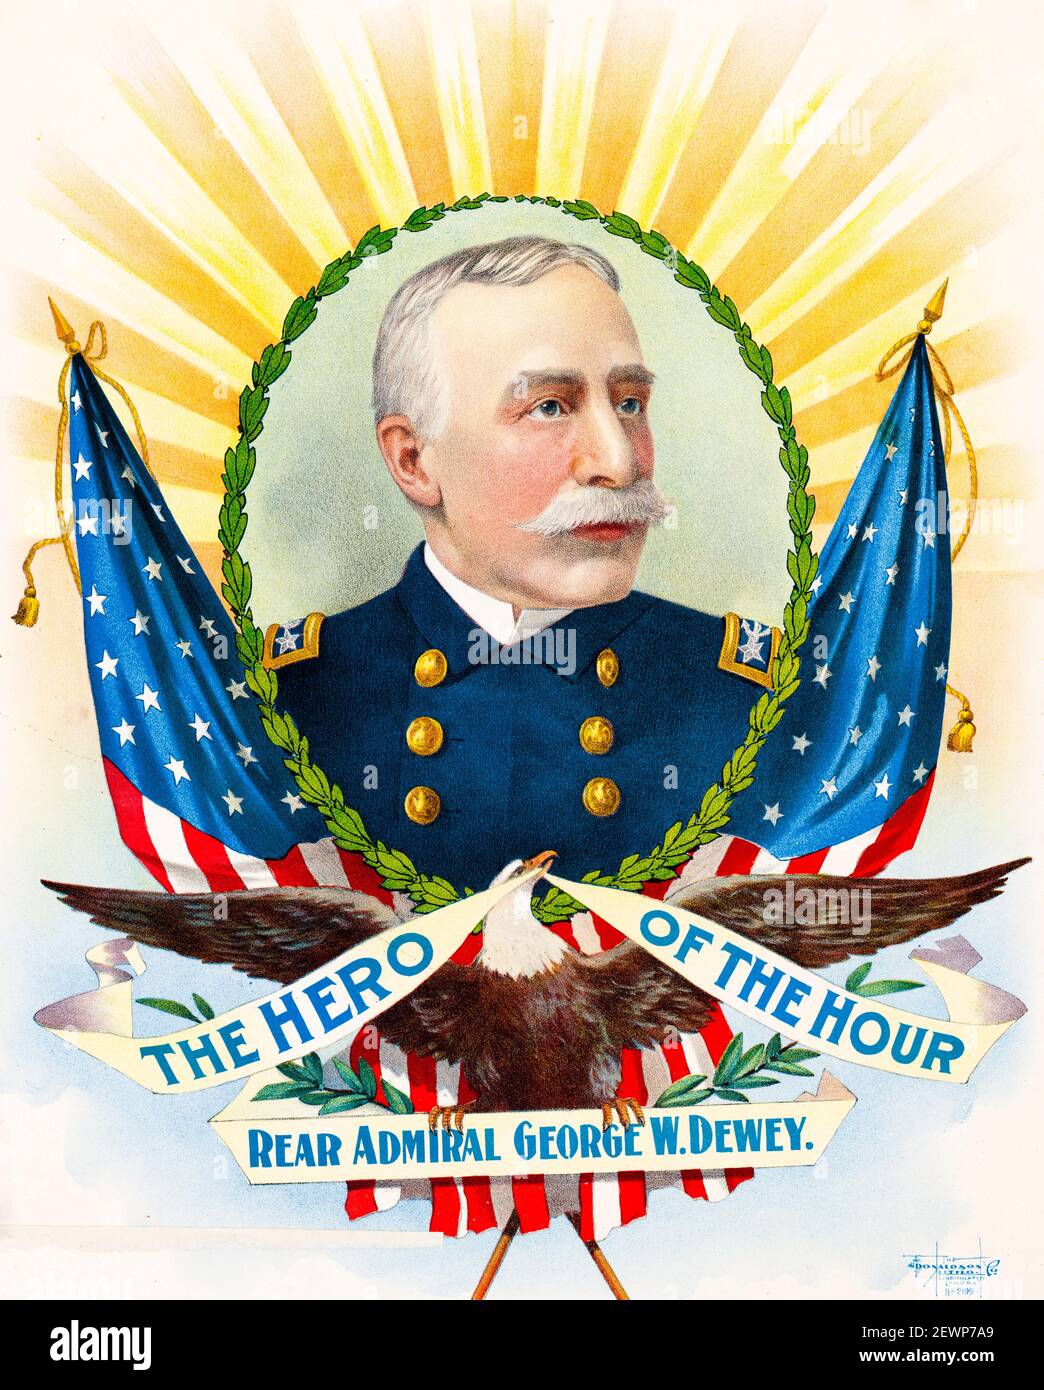 Der Held der Stunde, Admiral George Dewey (1837-1917), Plakat von Donaldson Lithography Company, um 1898 Stockfoto